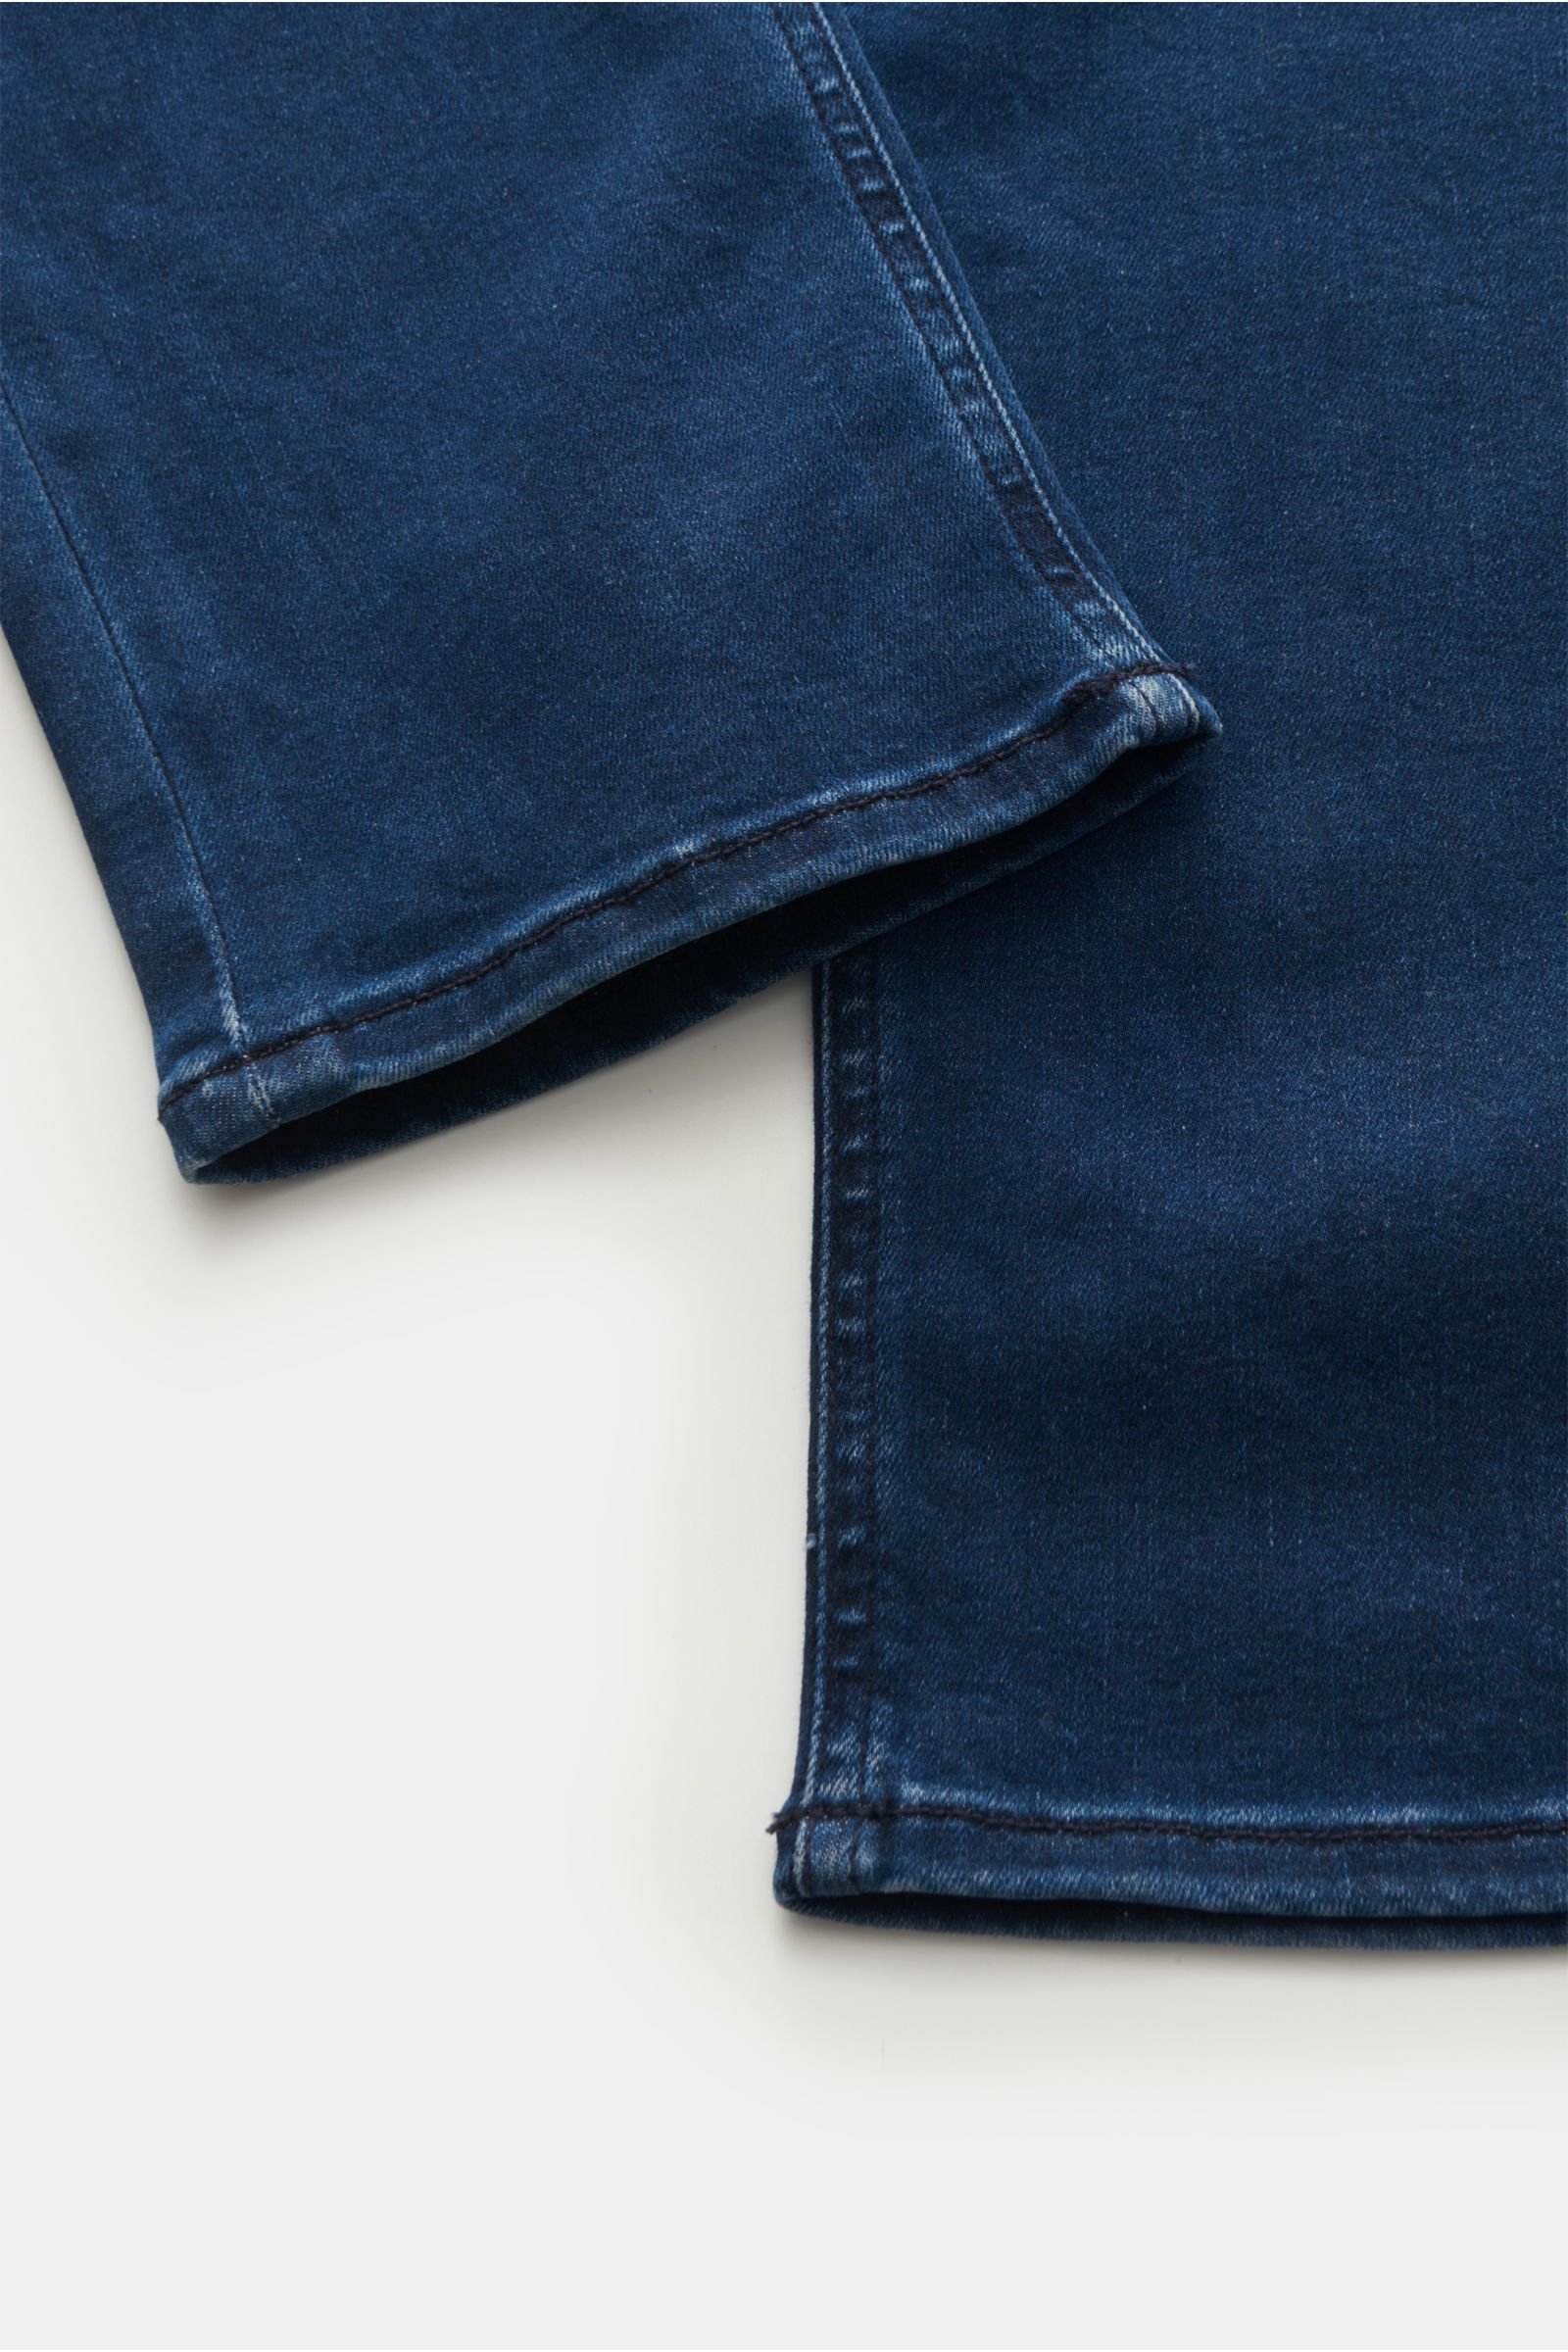 HANDPICKED jeans navy BRAUN | \'Orvieto\' Hamburg